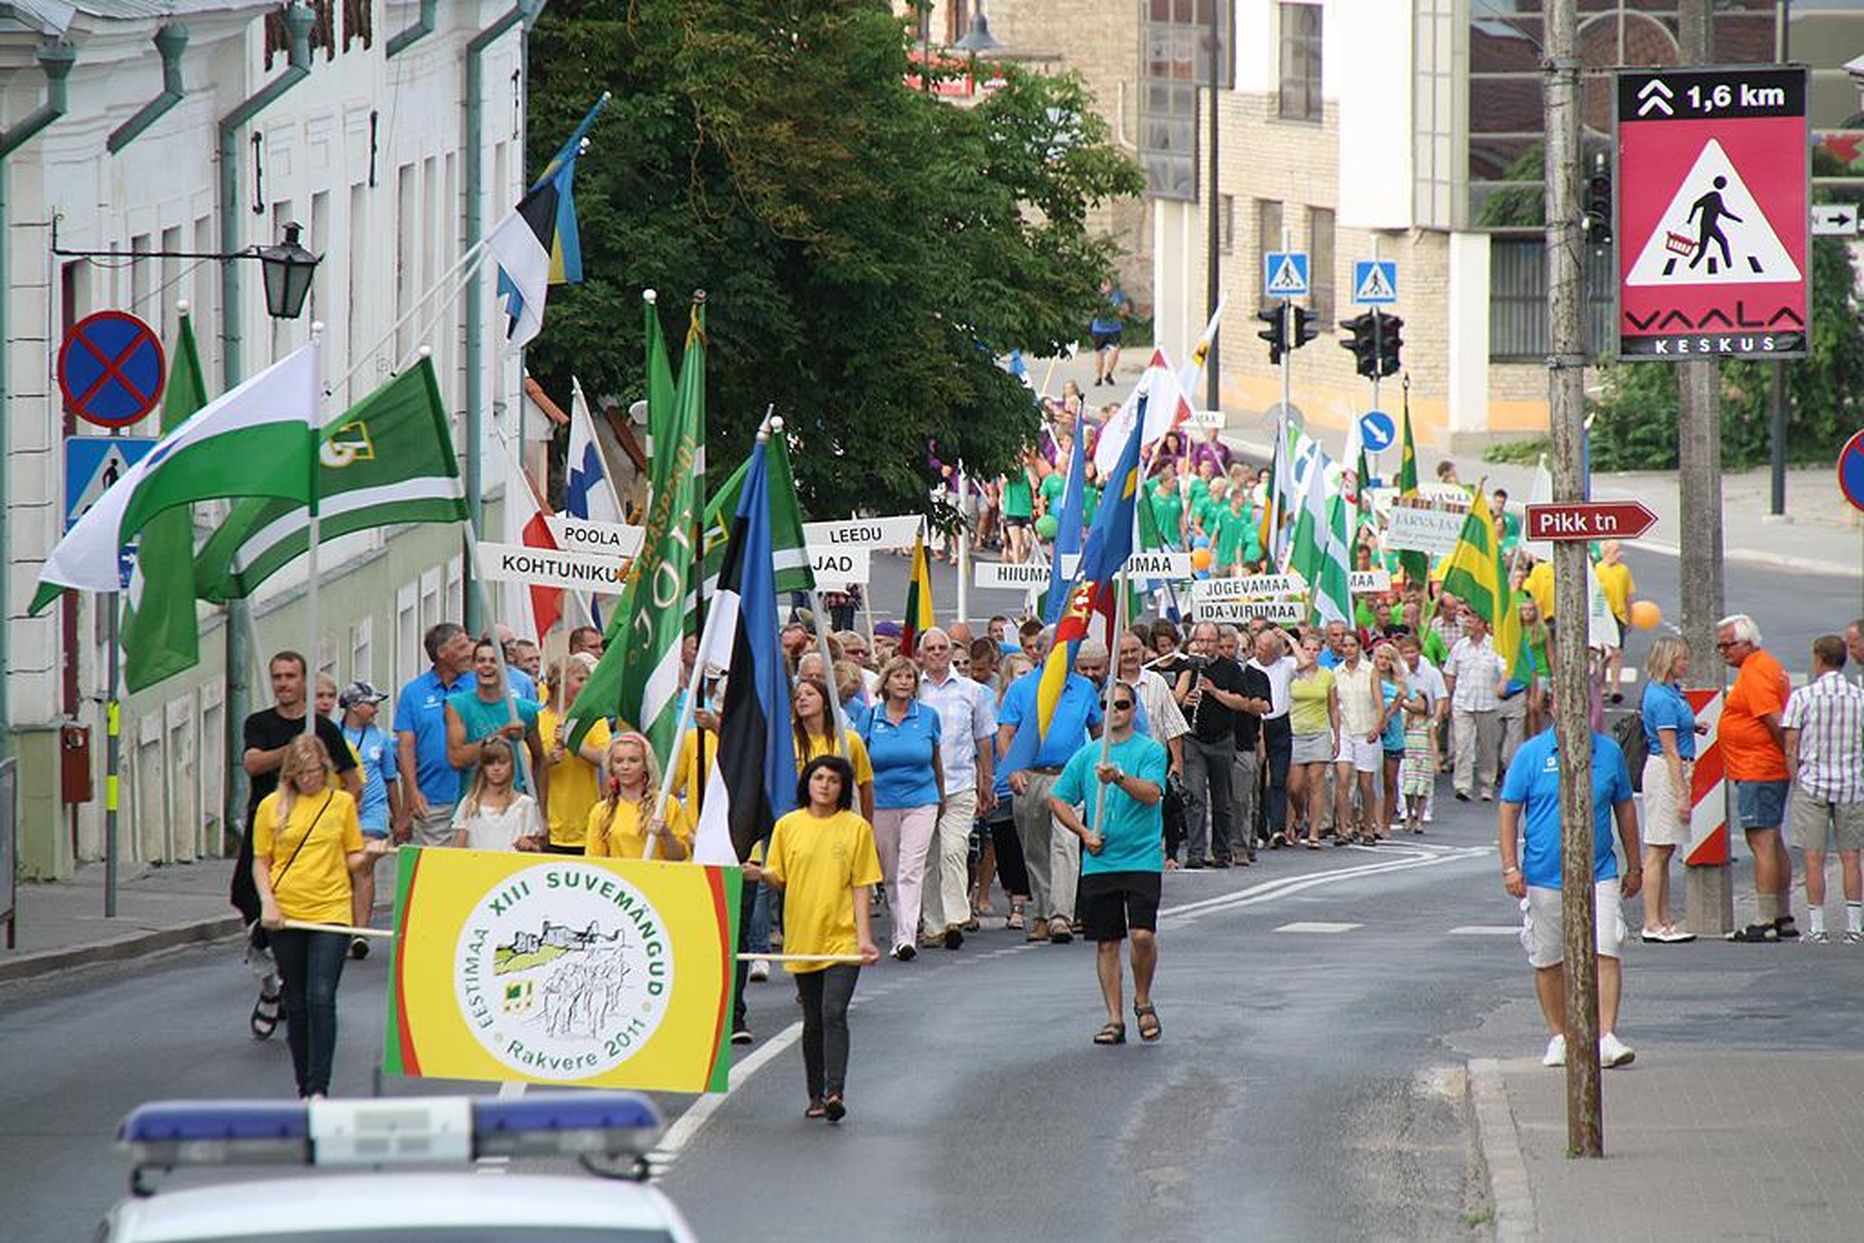 Eestimaa suvemängud on taas Rakveres. Siin võistlesid sportlased ka 2011. aastal.